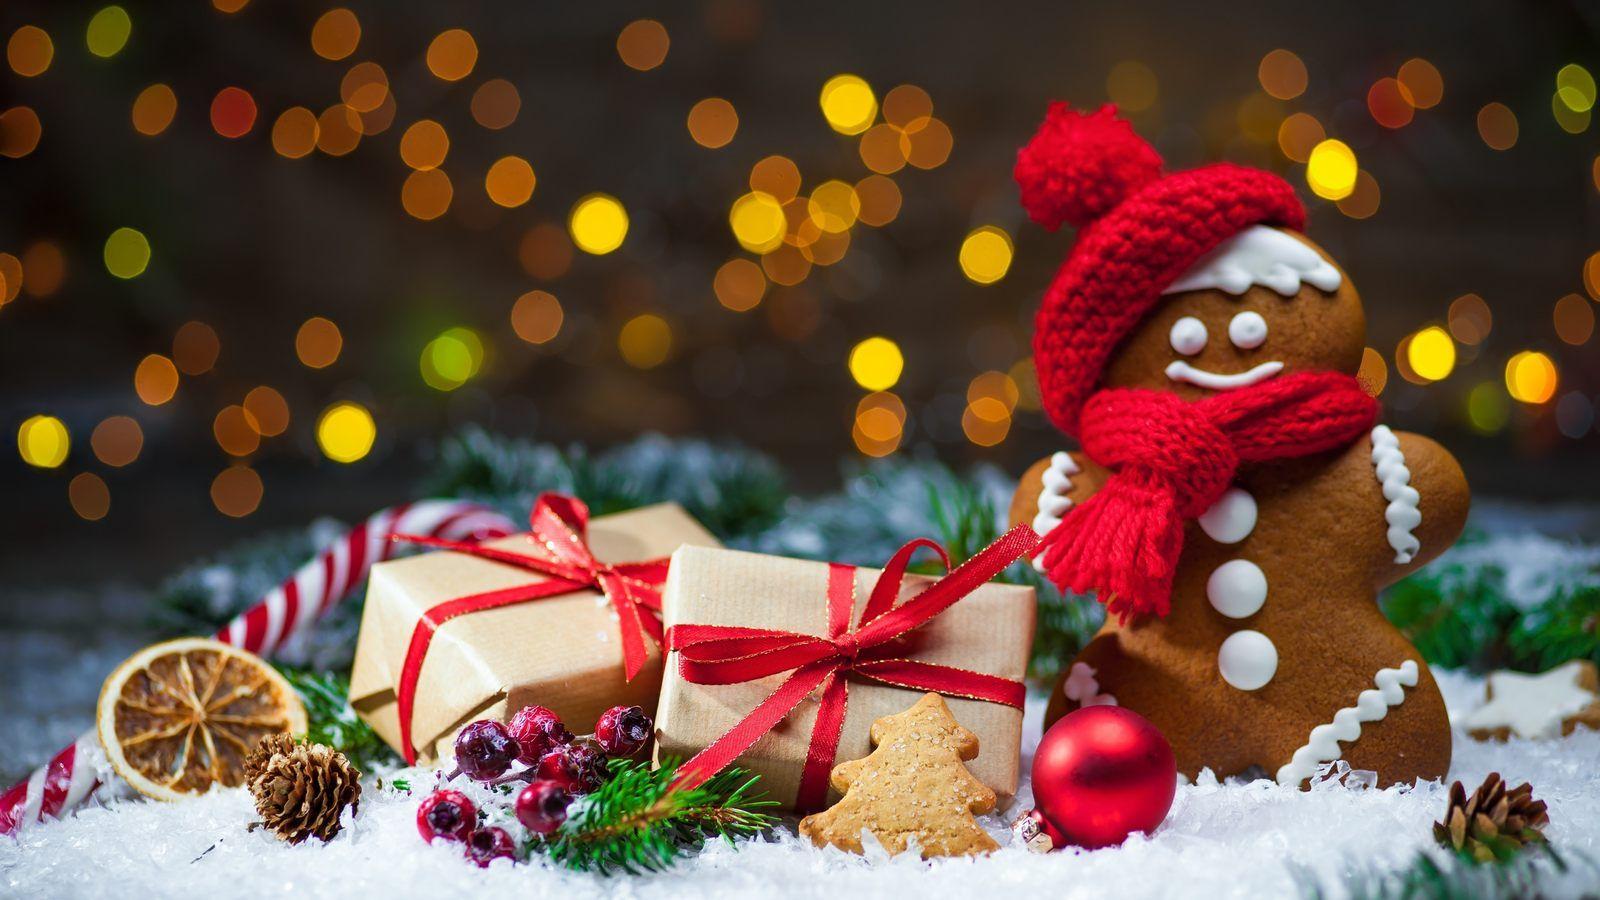 Обои \"Зима и Новый год\" - настроение праздника на рабочий стол! |  Самодельные рождественские подарки, Домашнее рождество, Рождественские  украшения